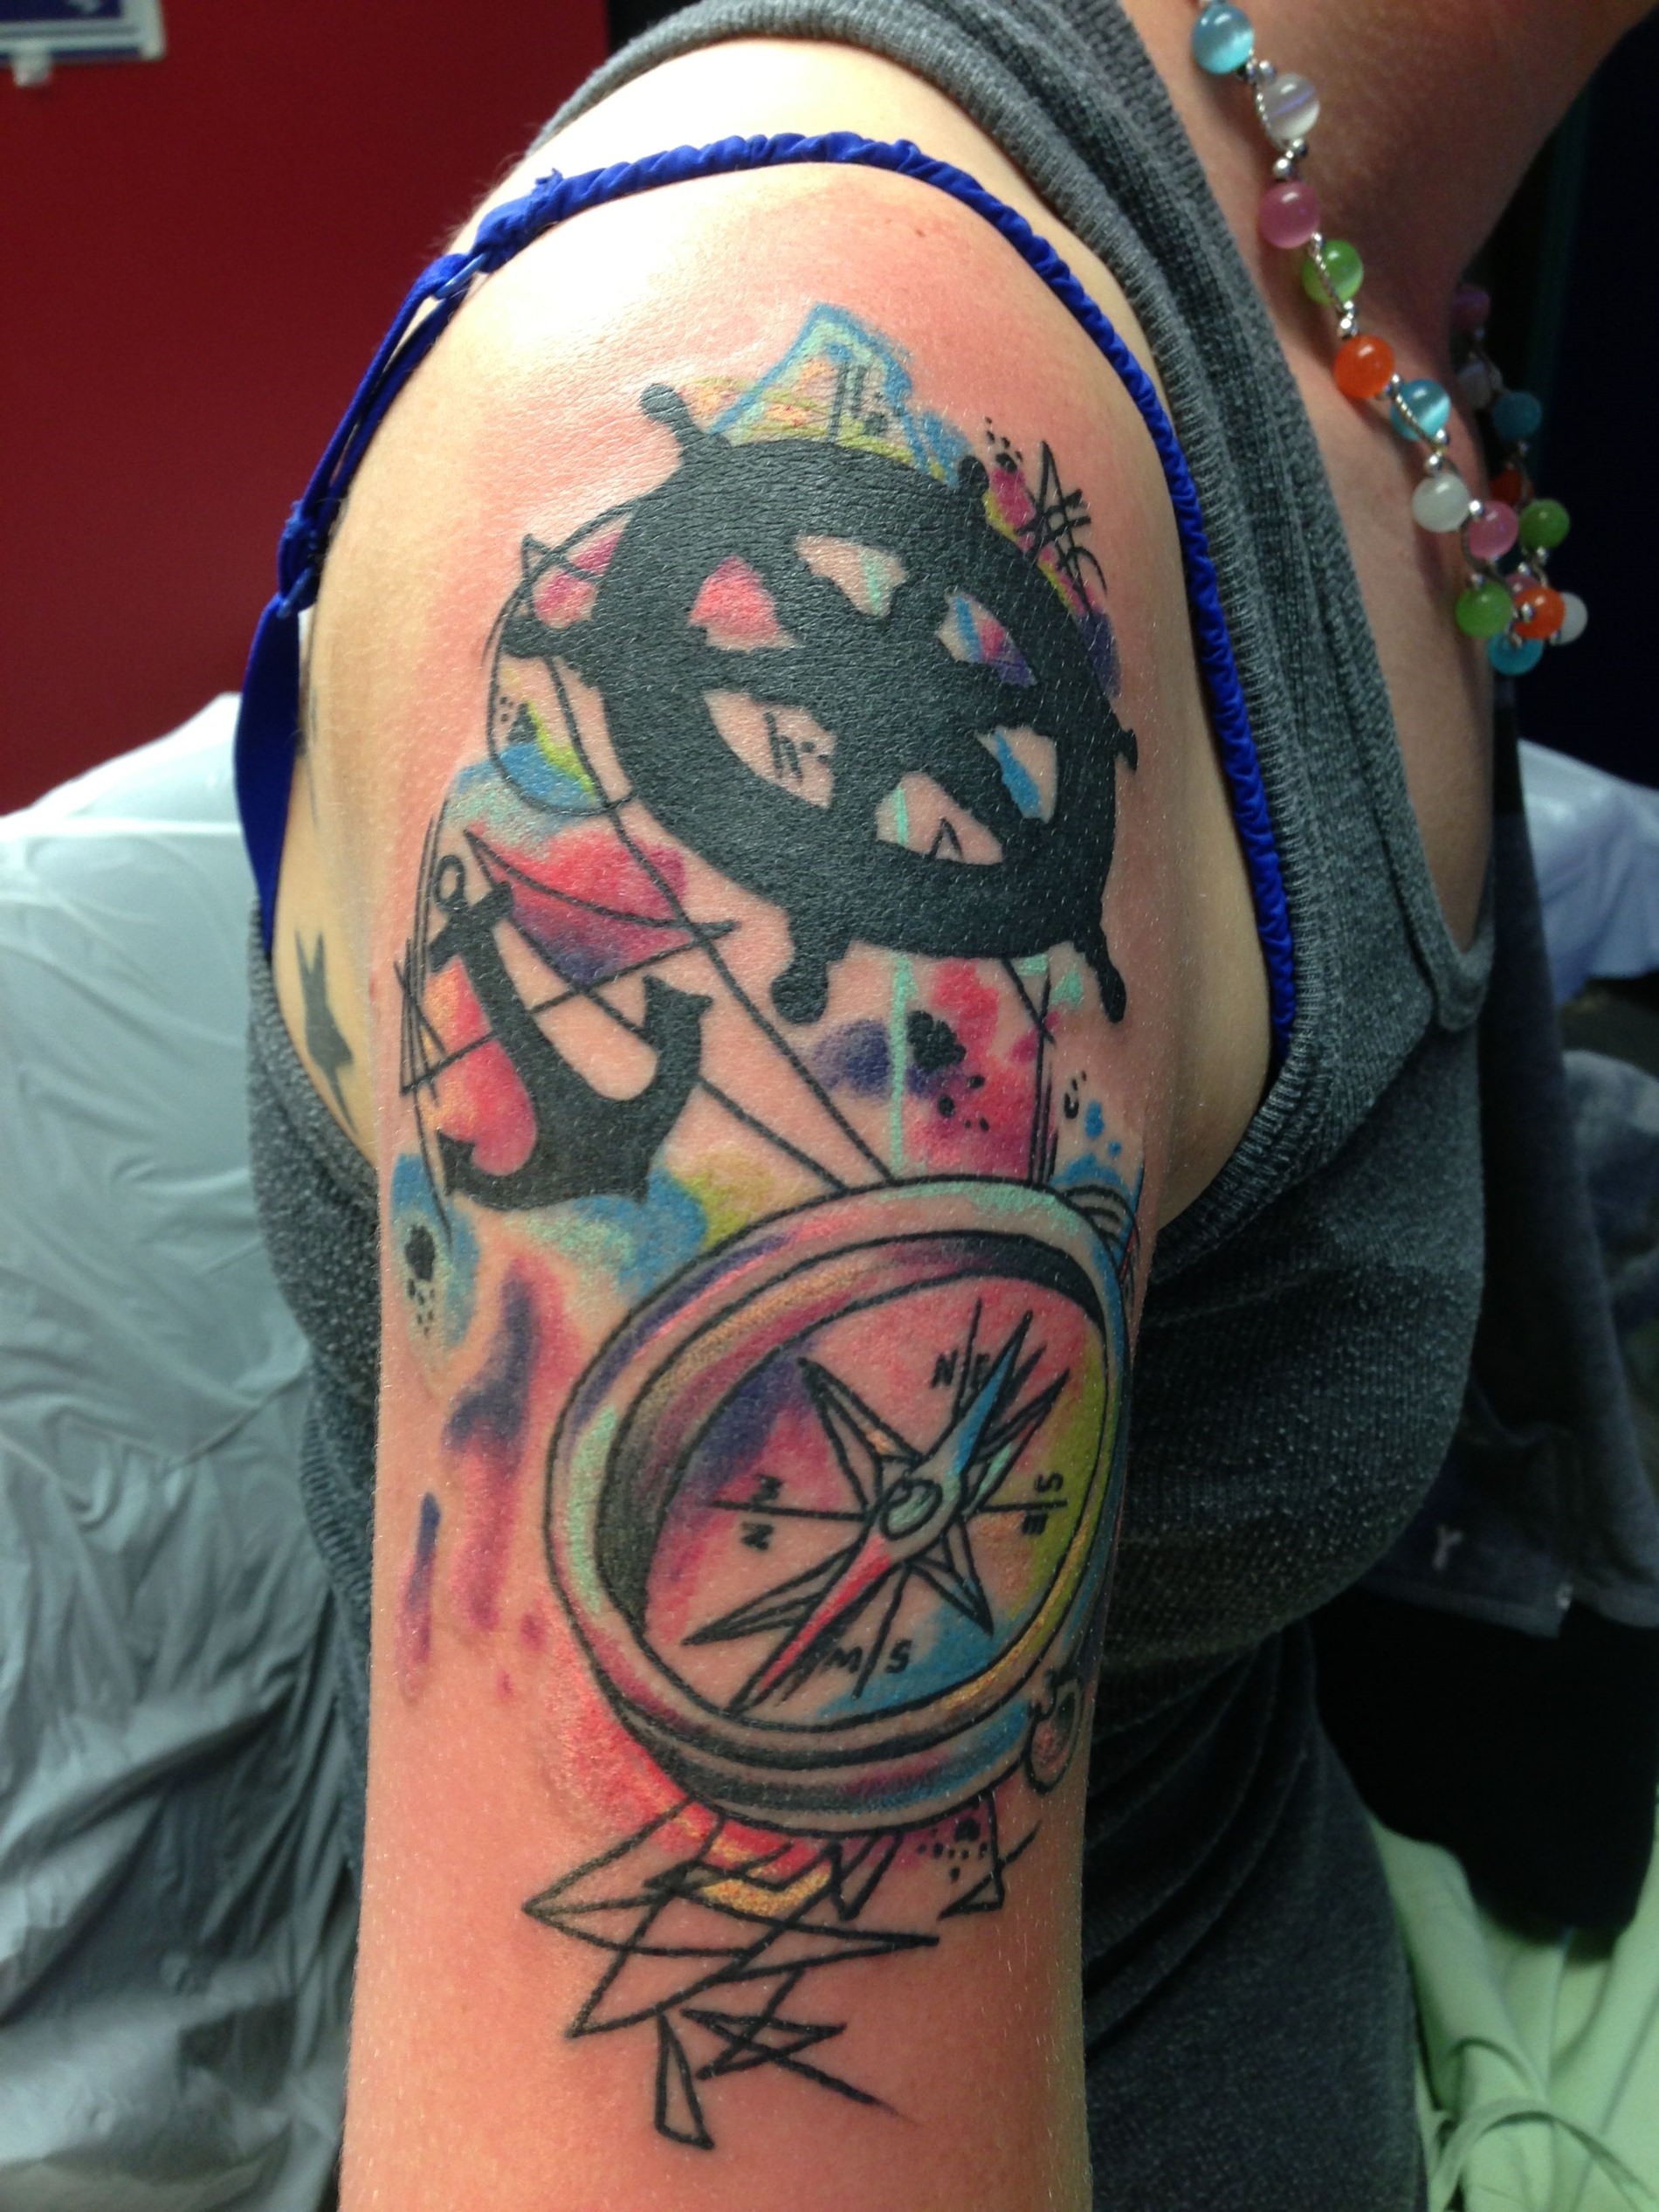 Tatuagem no braço com vários objetos marítimos